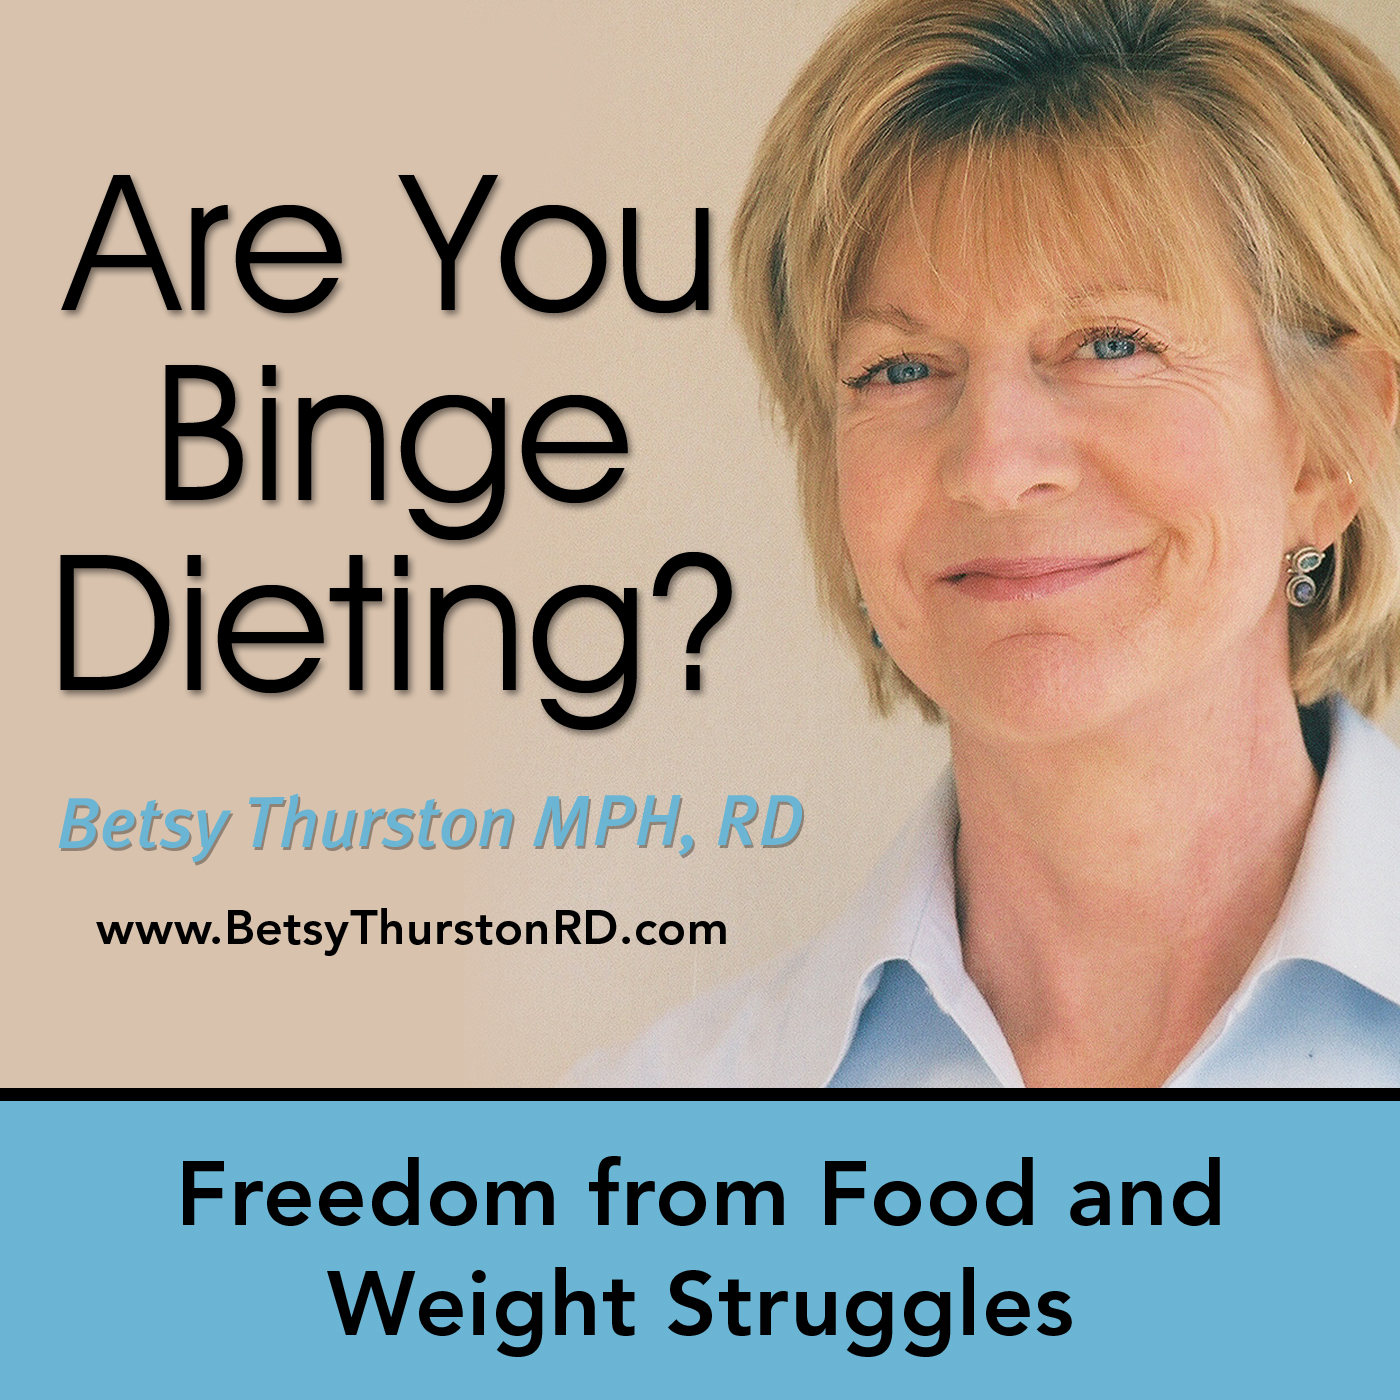 Binge Dieting